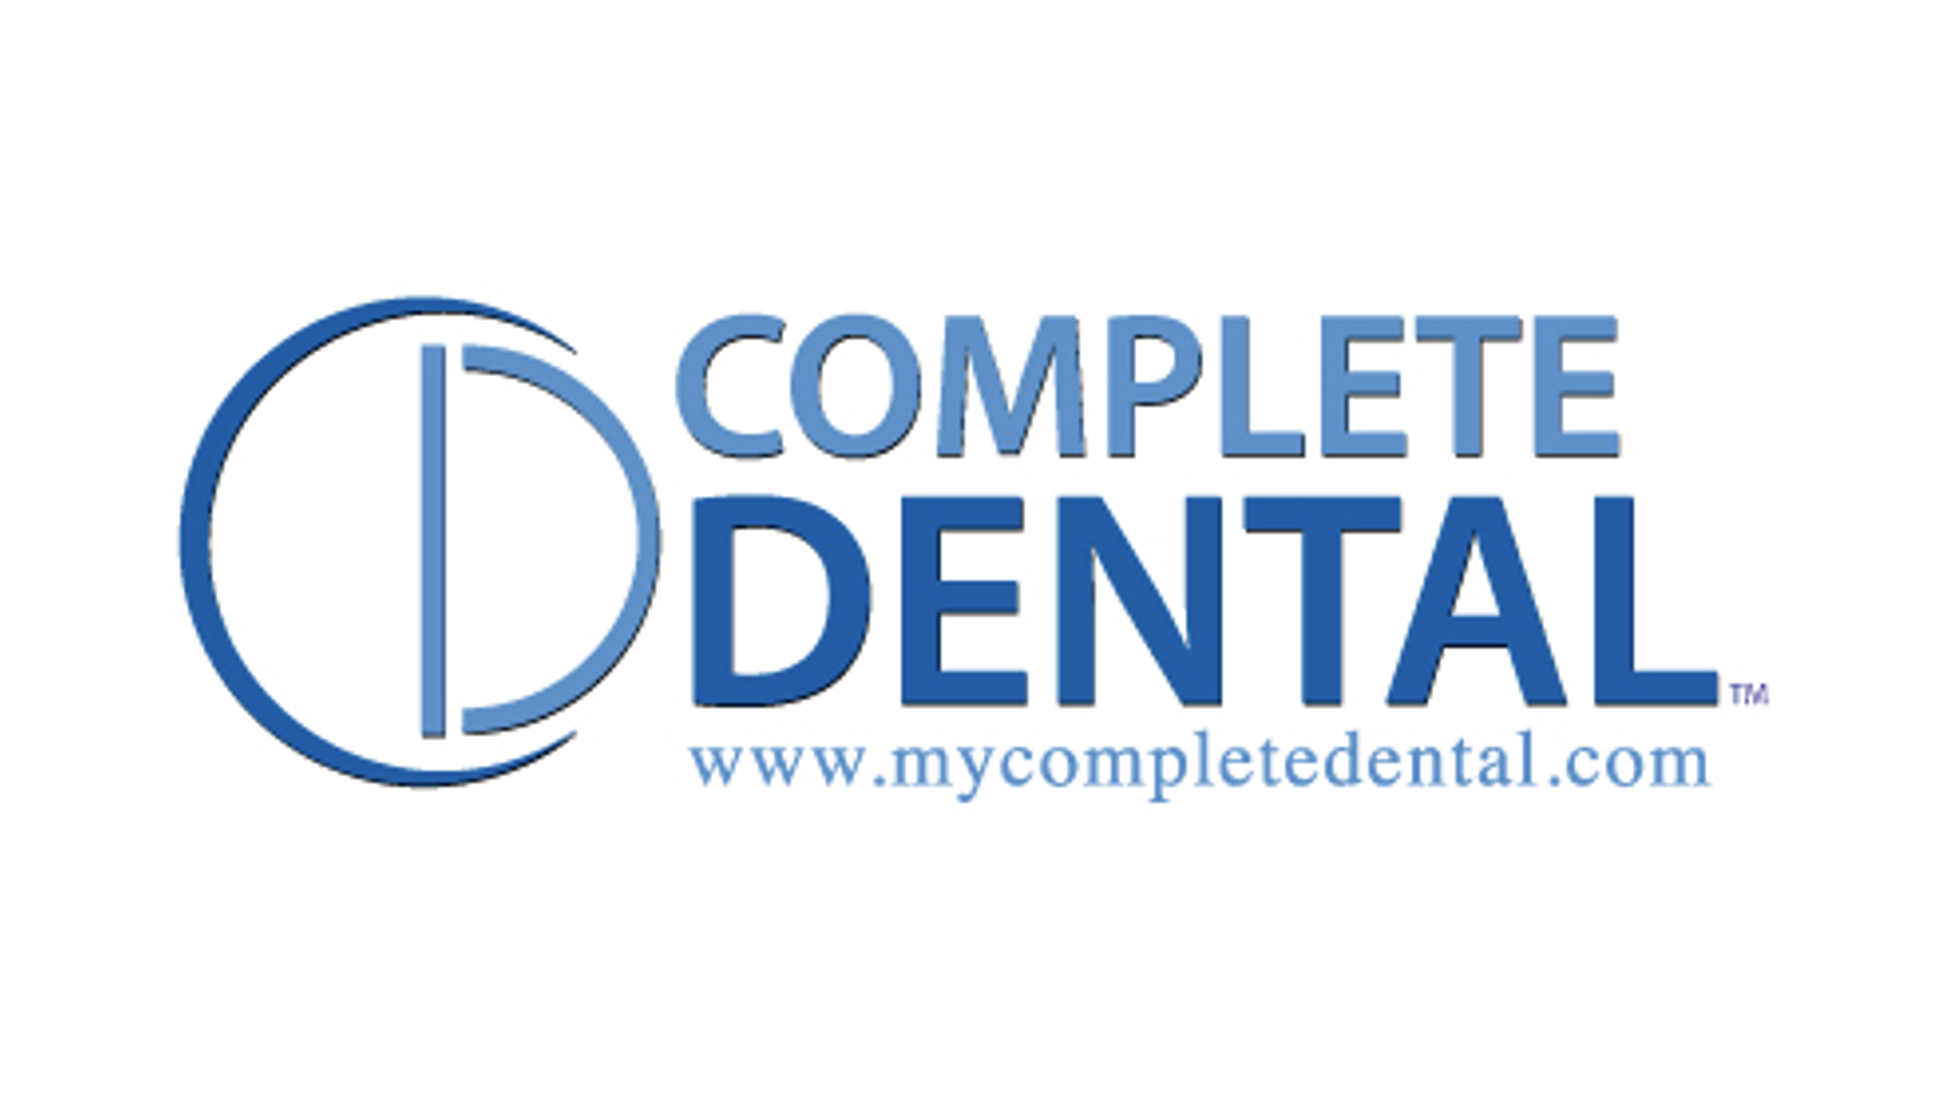 Complete Dental